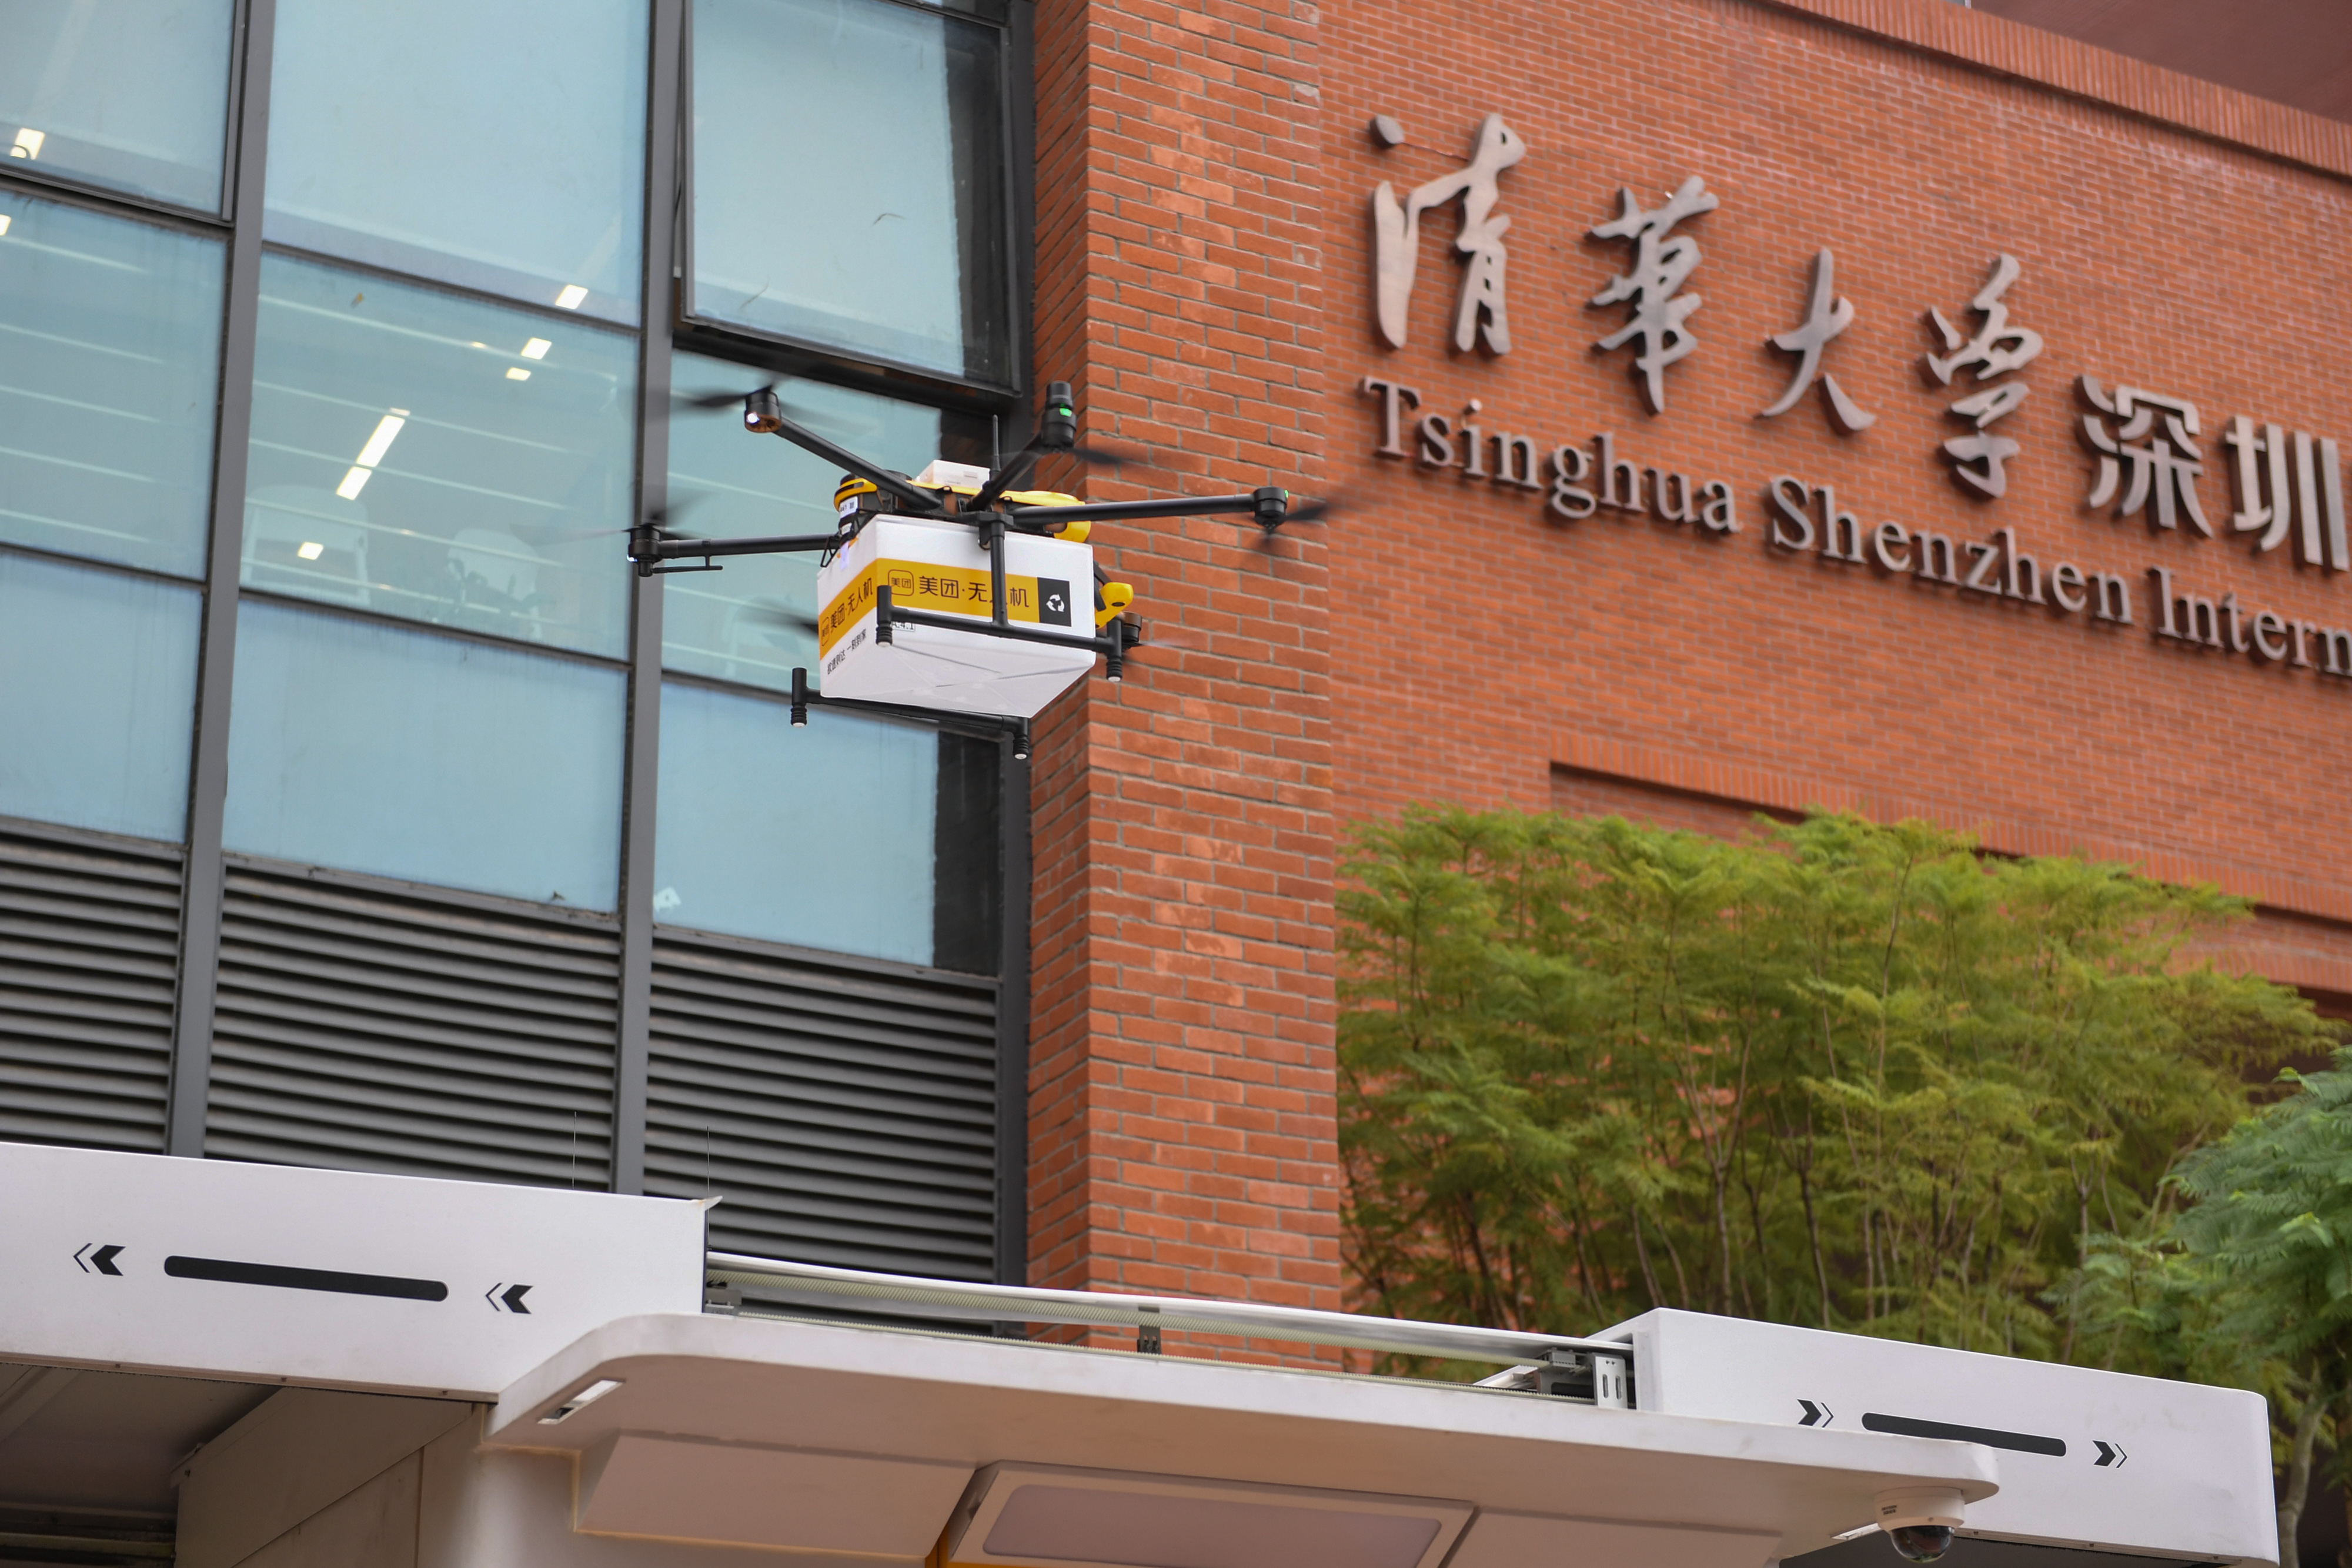 12月19日 首條高校場景的無人機配送航線正式落戶于深圳的清華大學研究生院 新華社.jpg